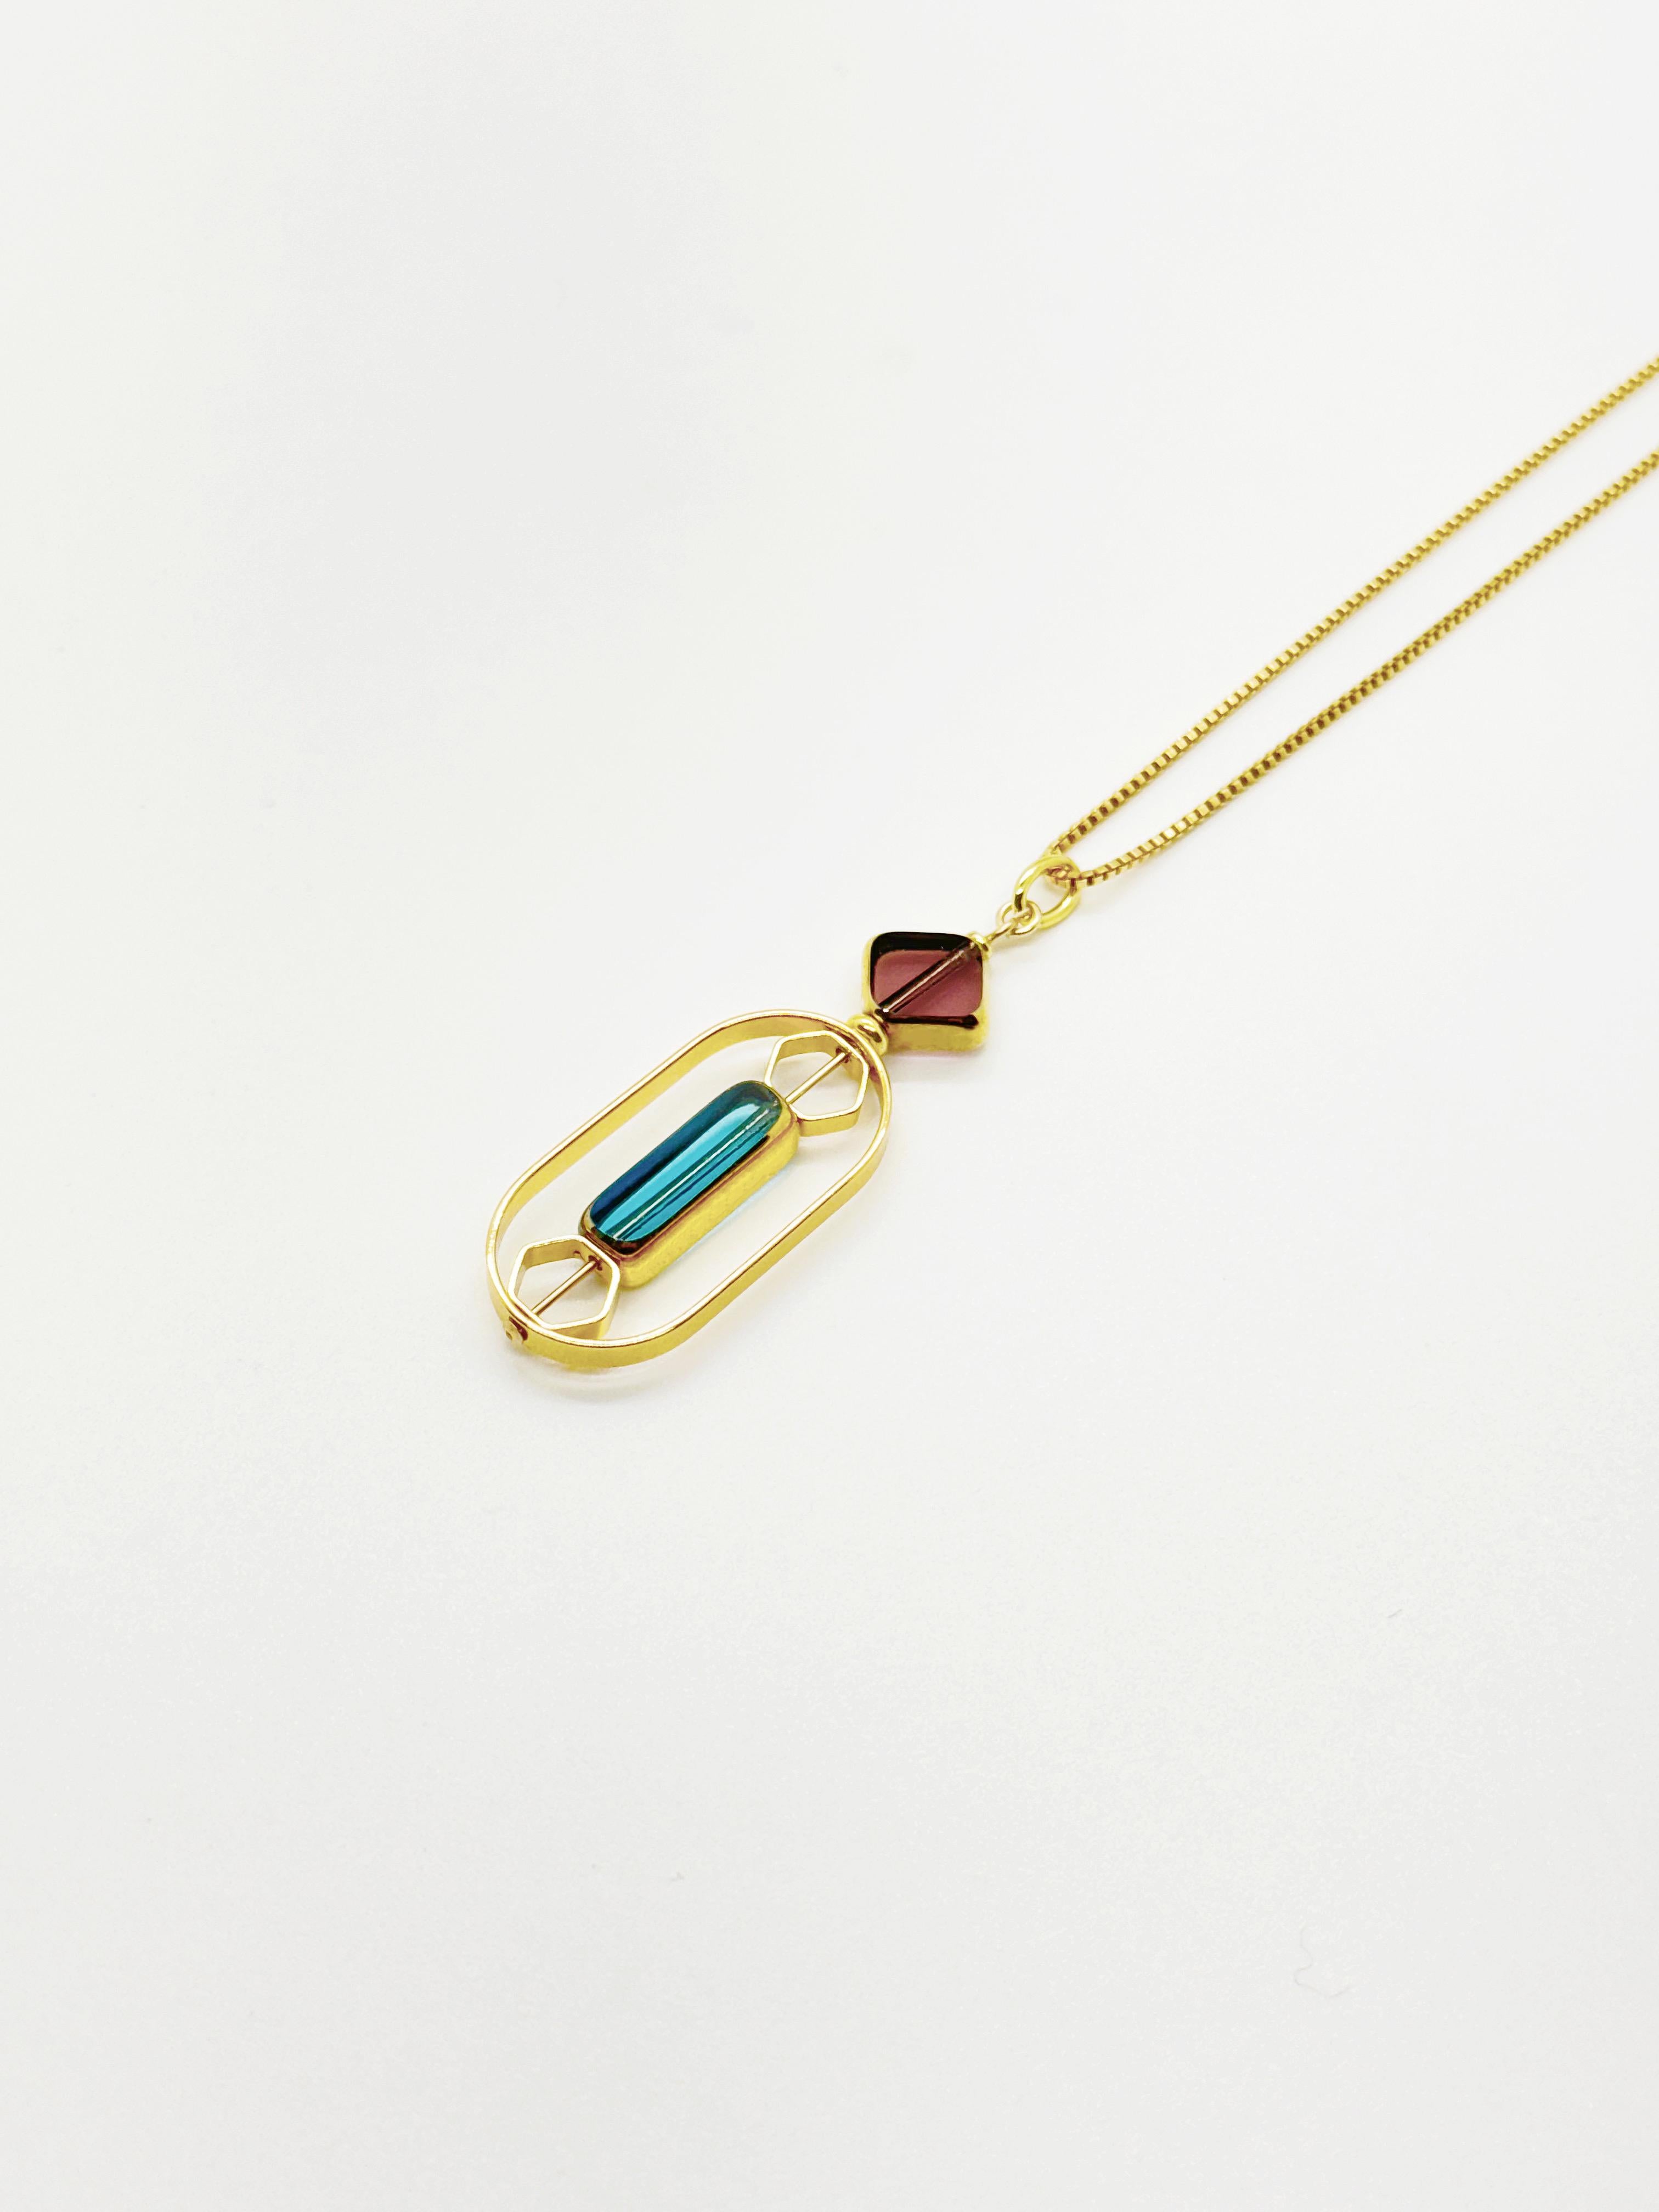 Le pendentif est composé de perles de verre allemandes vintage translucides bordeaux et bleu clair et se termine par une chaîne en or de 18 pouces. 

Les perles sont de nouvelles perles de verre allemandes vintage qui sont encadrées avec de l'or